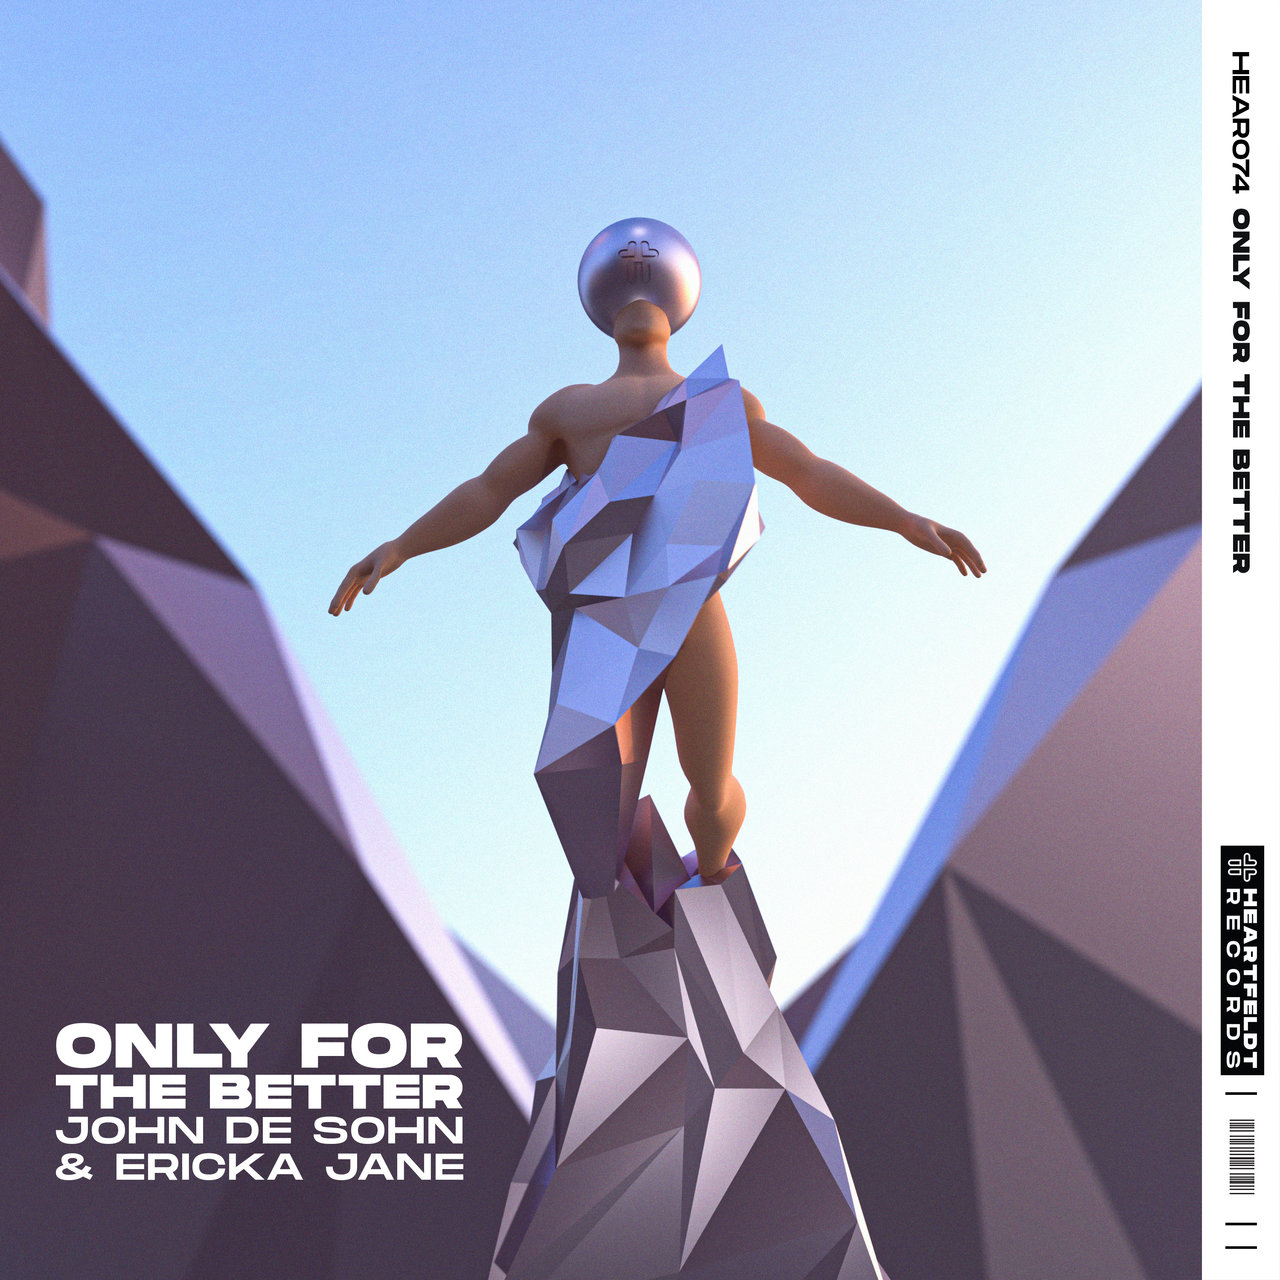 John de Sohn & Ericka Jane — Only For The Better cover artwork